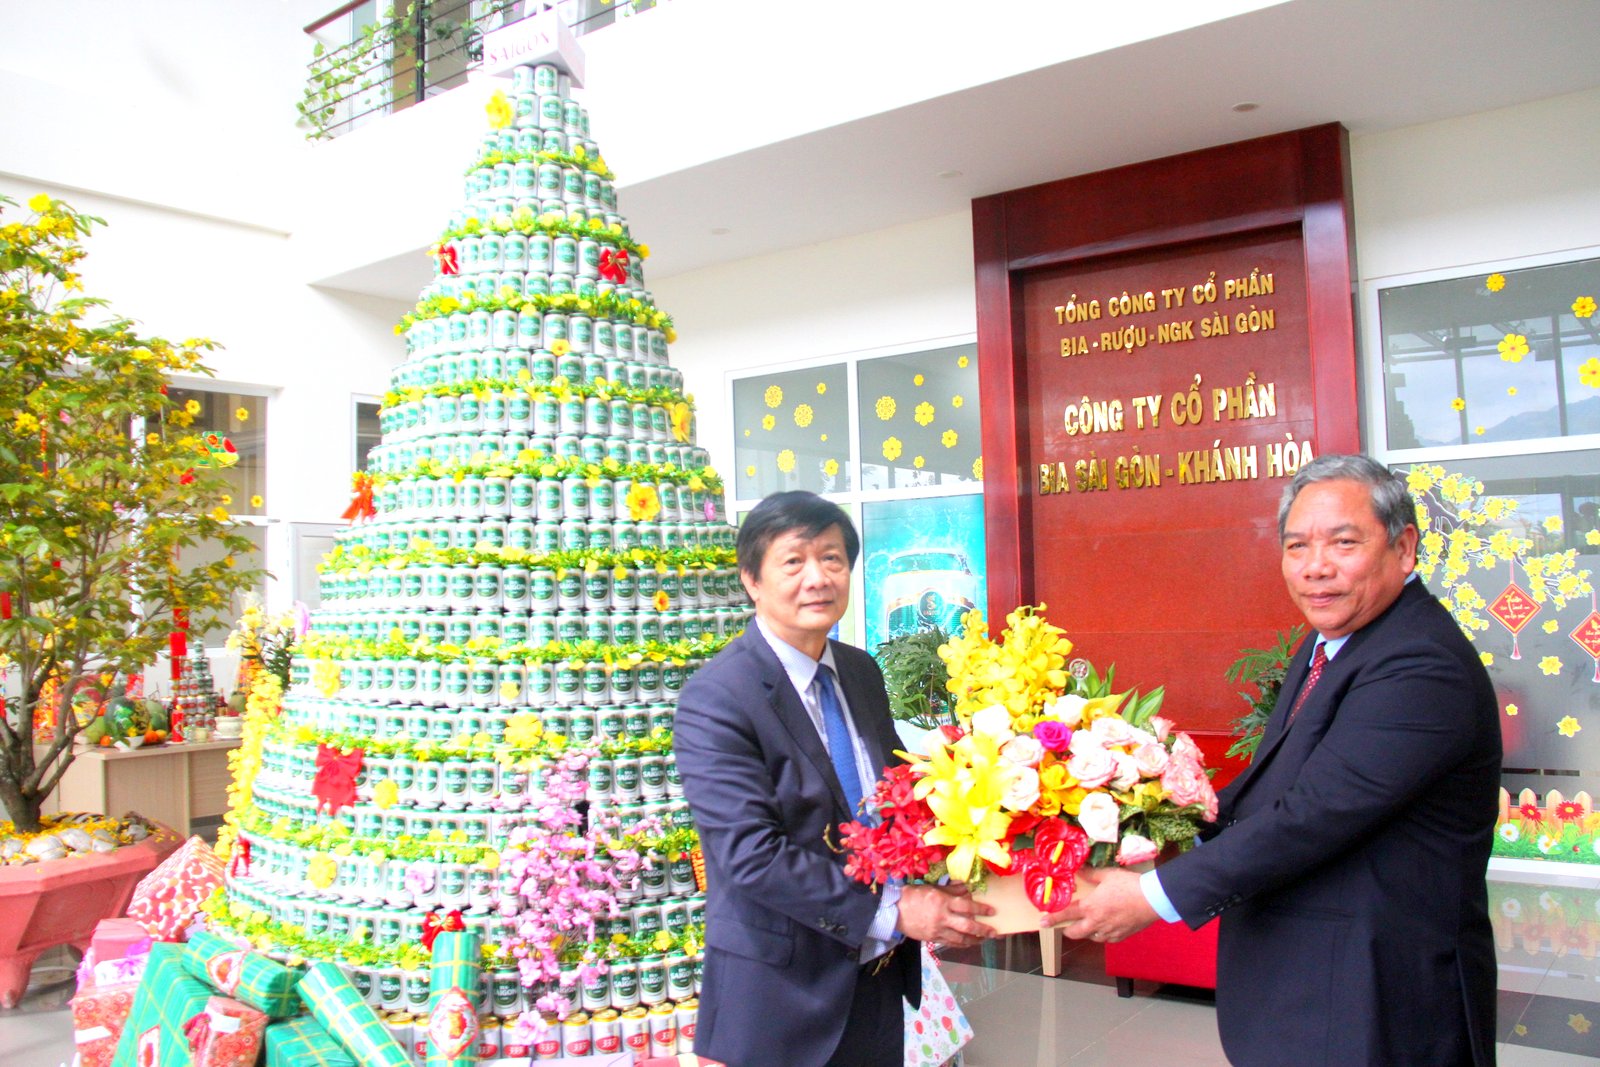 Phó chủ tịch thường trực UBND tỉnh Khánh Hòa tặng hoa chúc mừng những thành tích mà Công ty cổ phần Bia Sài Gòn - Khánh Hòa đạt được trong năm 2018